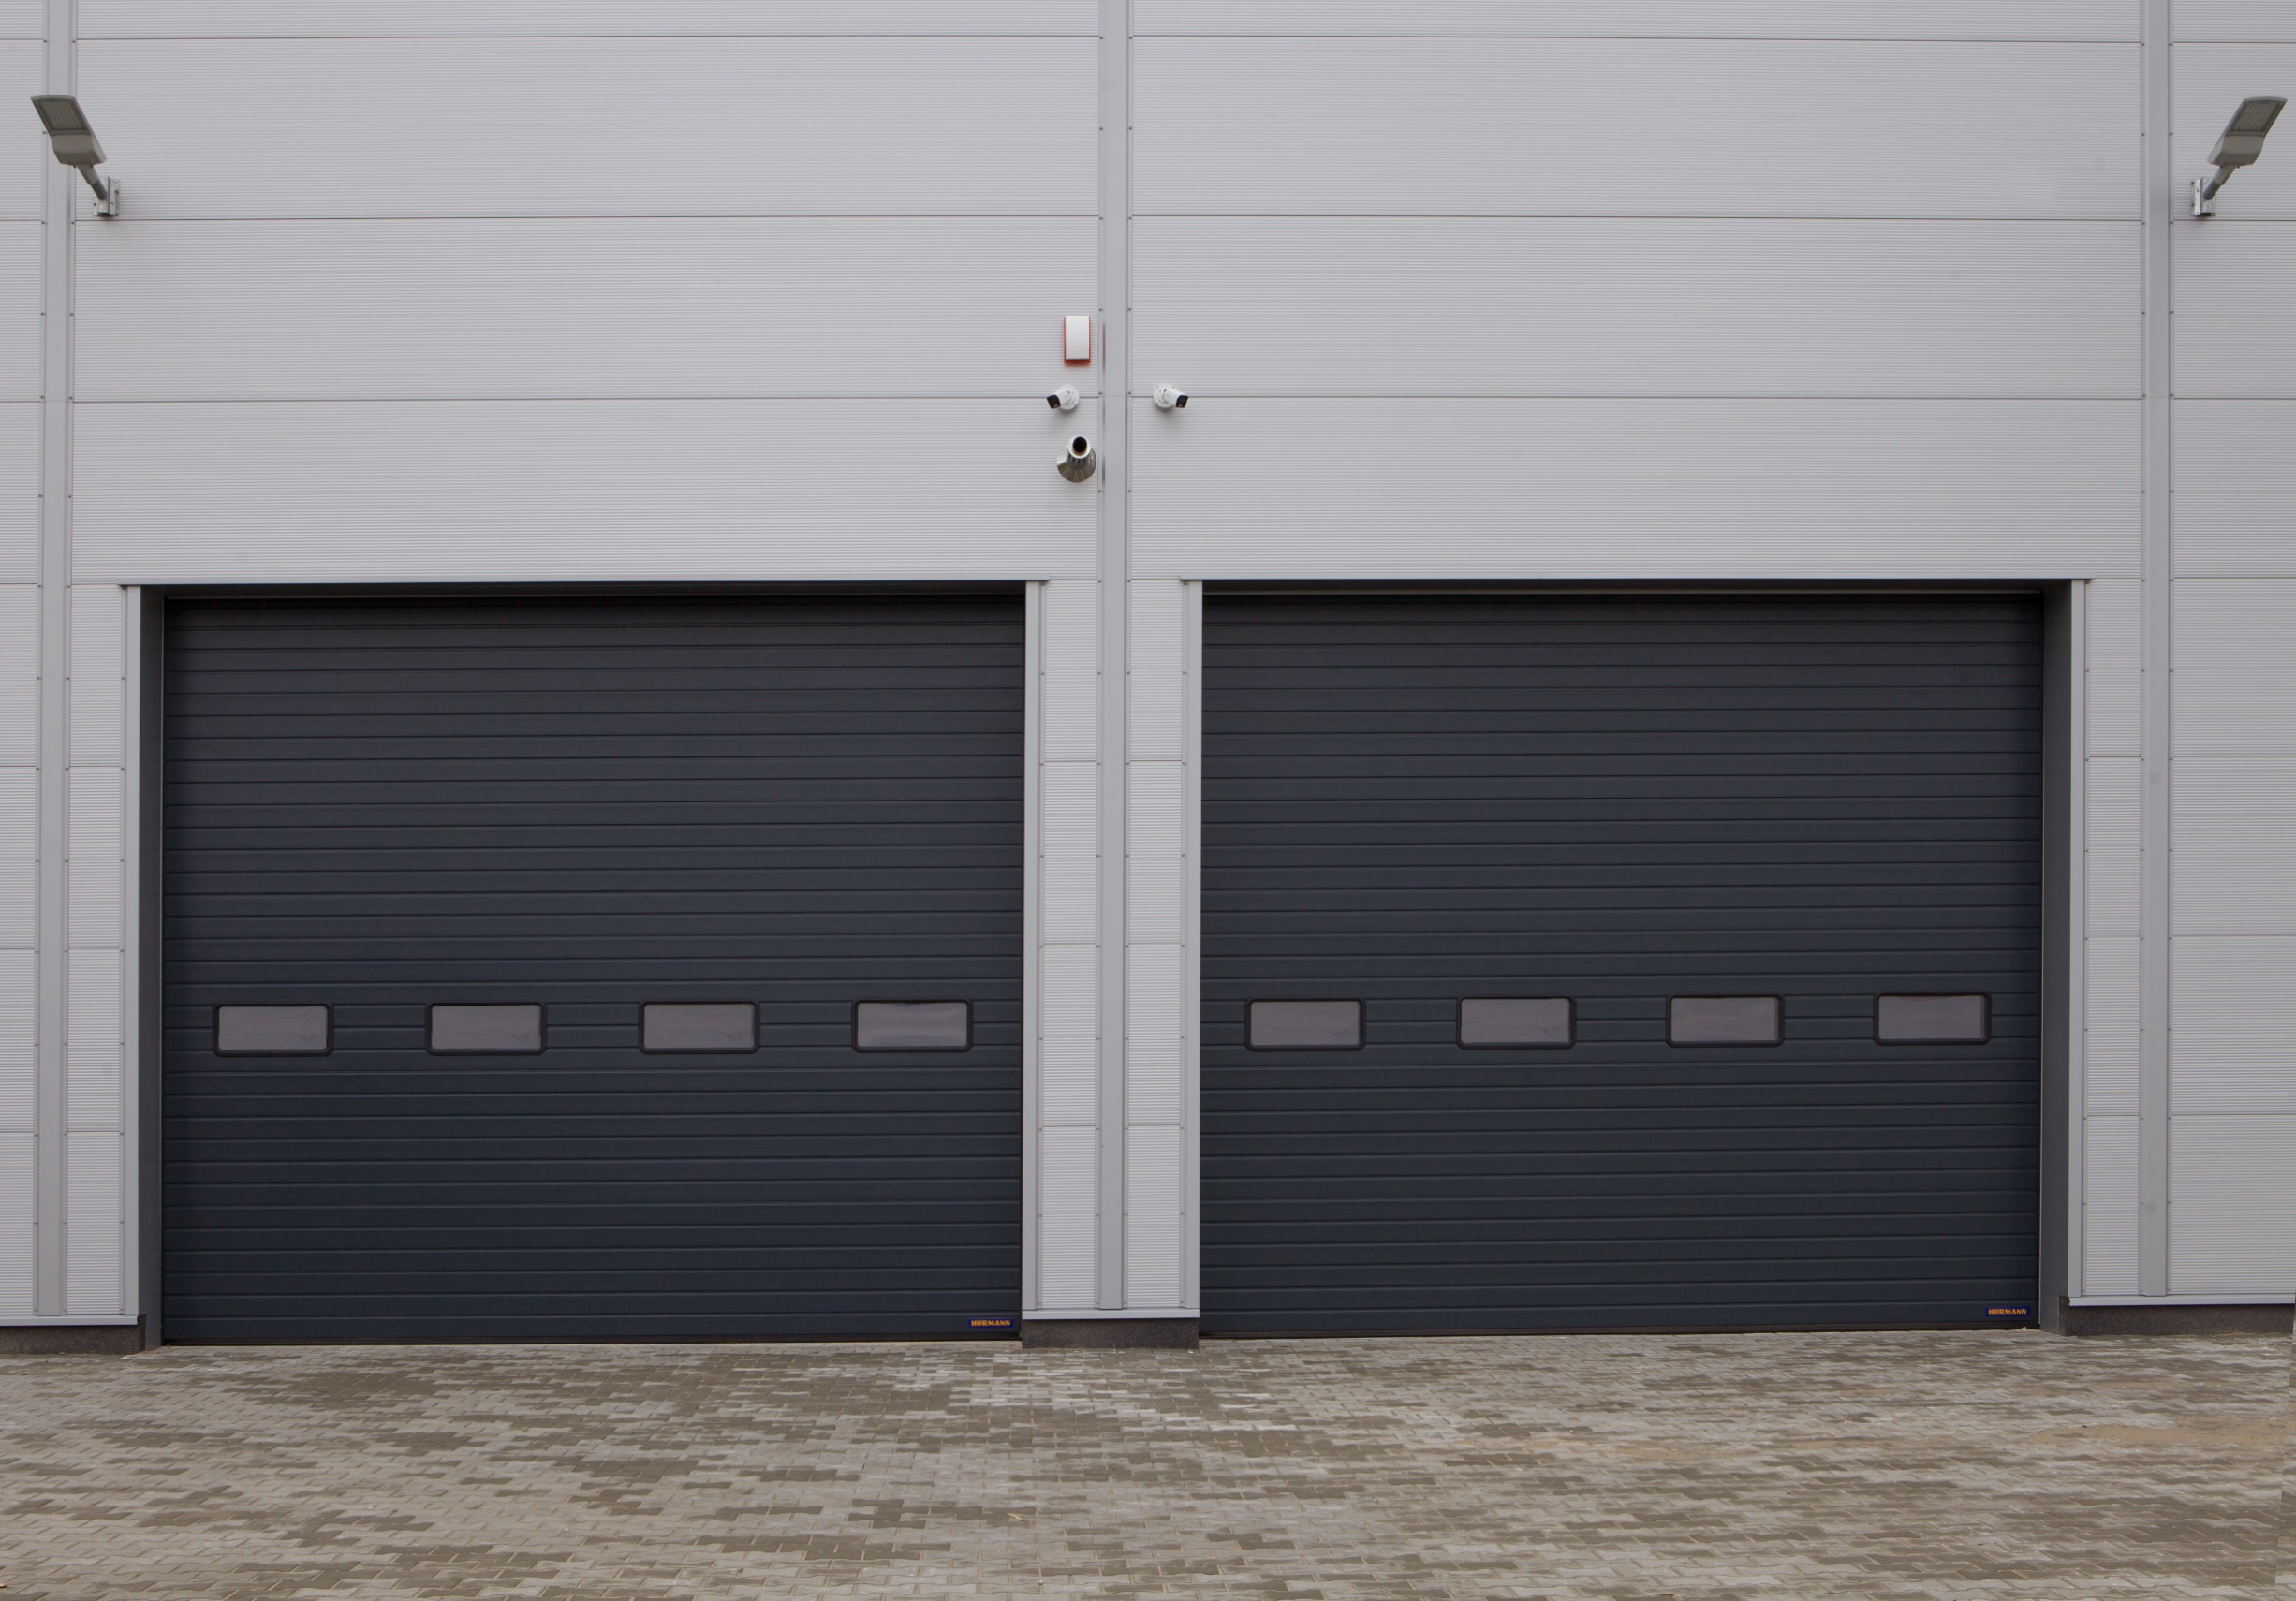 Instalar en el garaje de casa un espejo de seguridad. - Parking Shop –  productos de señalización, protección y seguridad vial